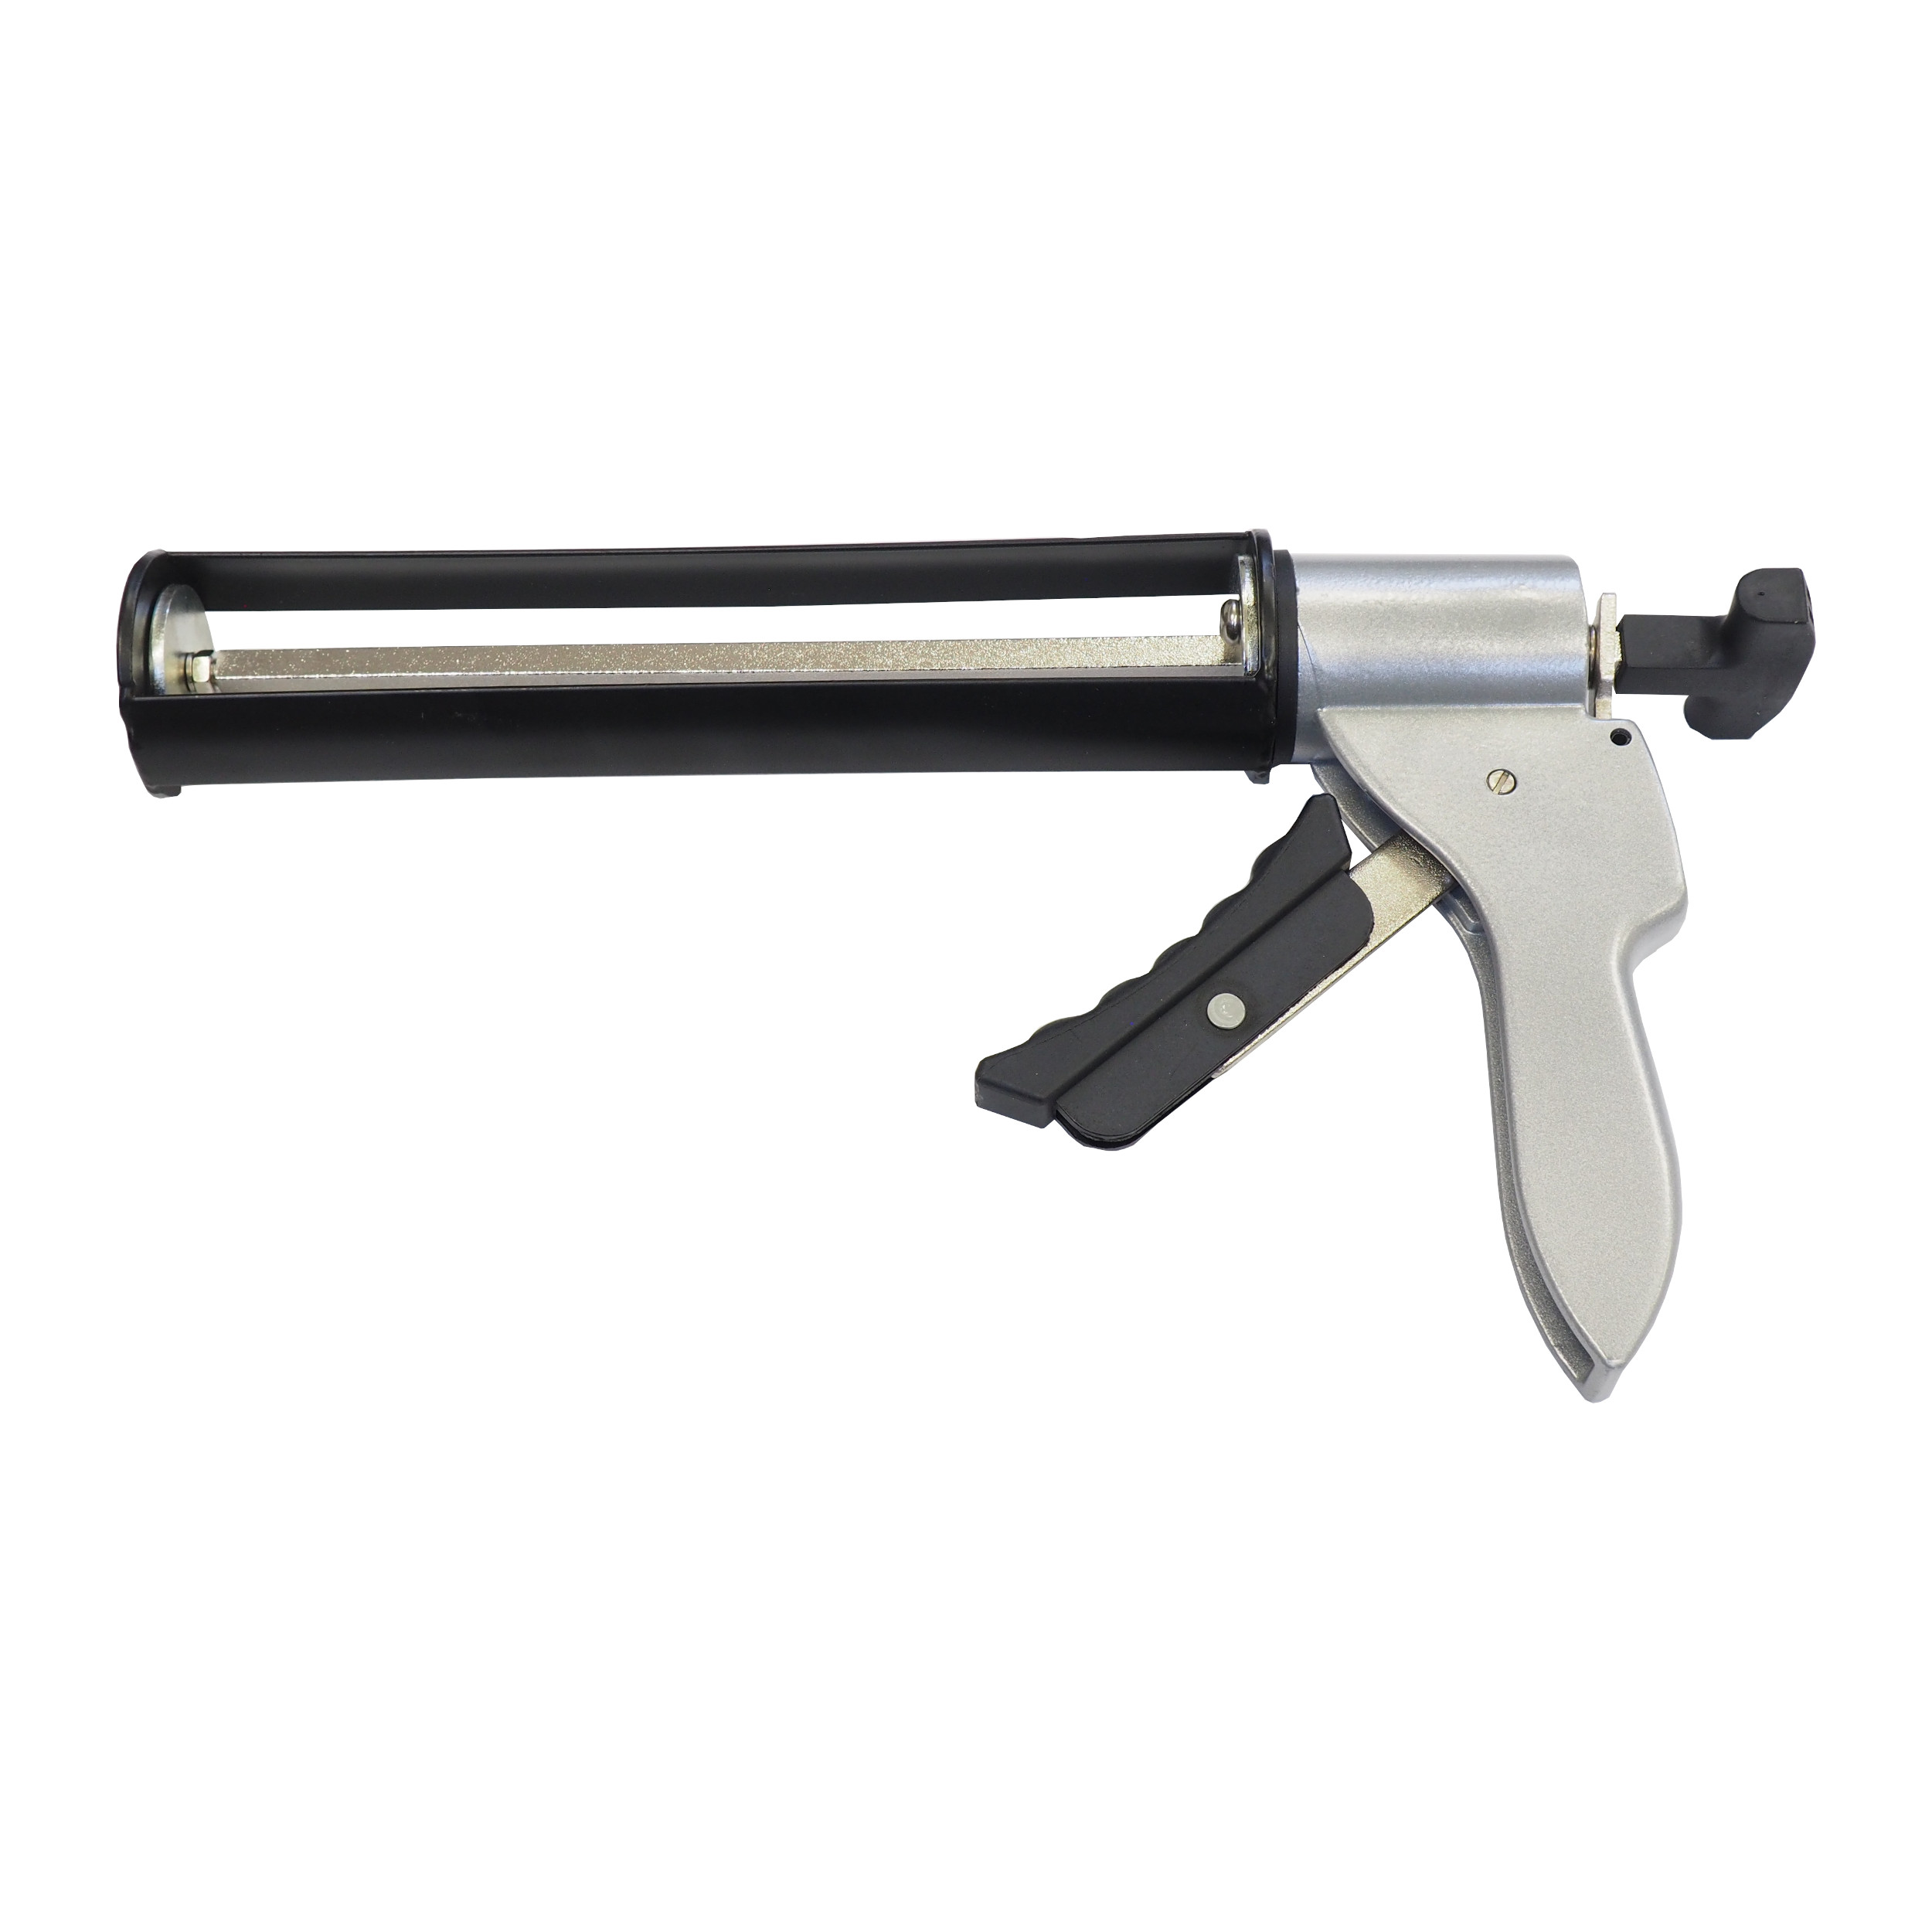 TOPTRADE pistole vytlačovací, s výtlačnou silou do 4000N, 310 ml - BAZAR - 1.02 Kg TOP Sklad4 300116.01 1